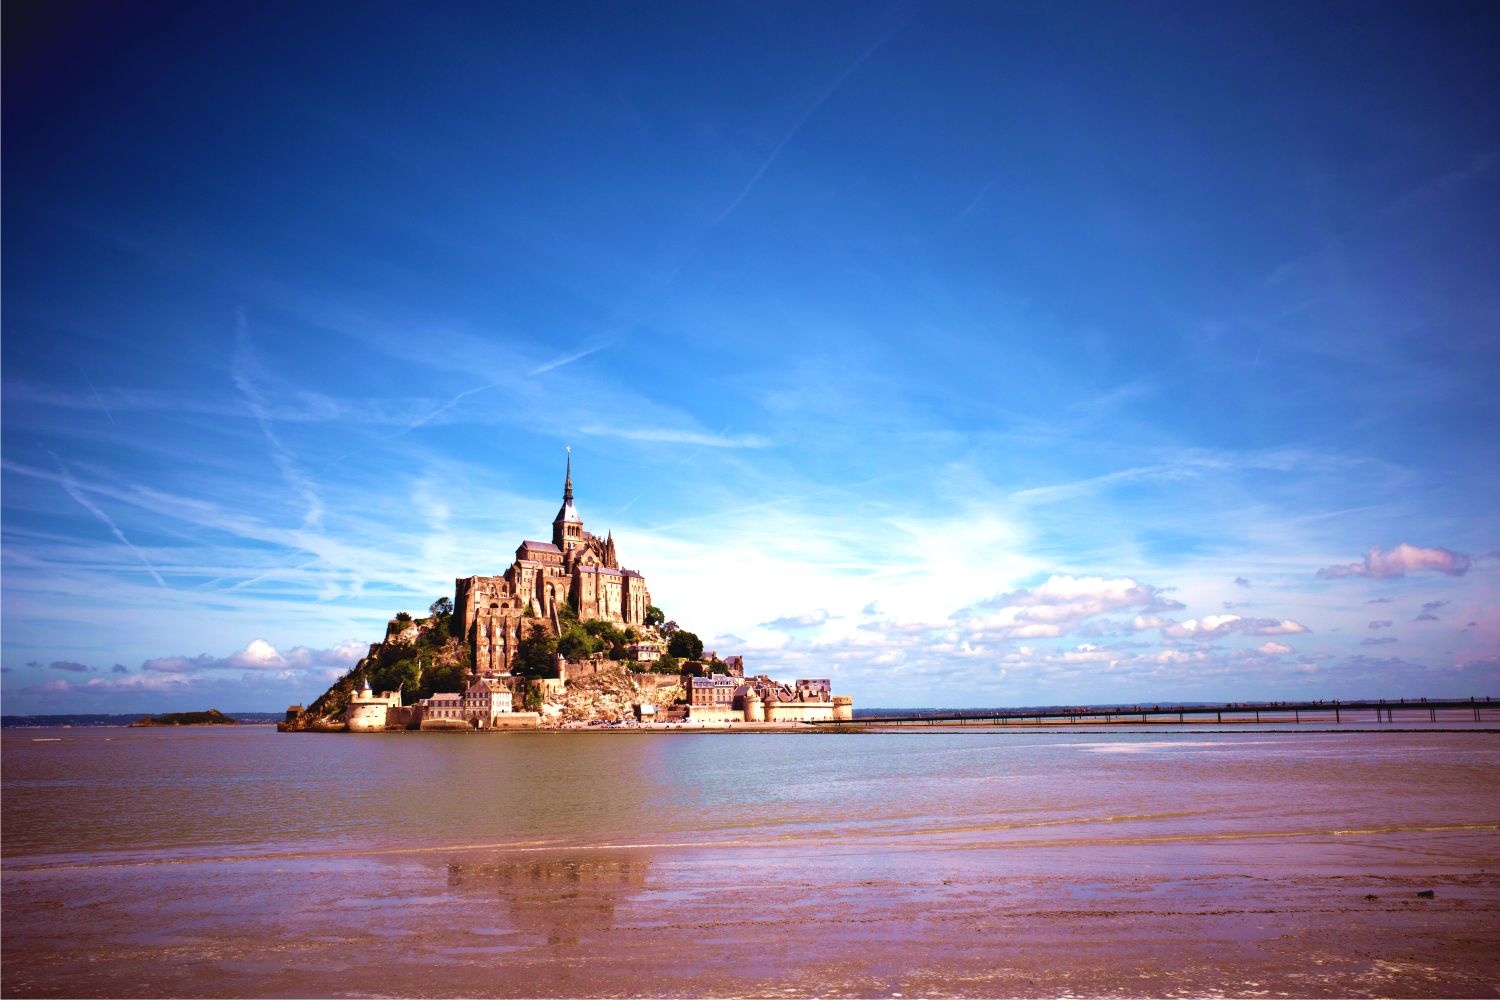 Khám phá Mont Saint Michel - biểu tượng của người Pháp về sự kiên cường và tự do  - Ảnh 6.